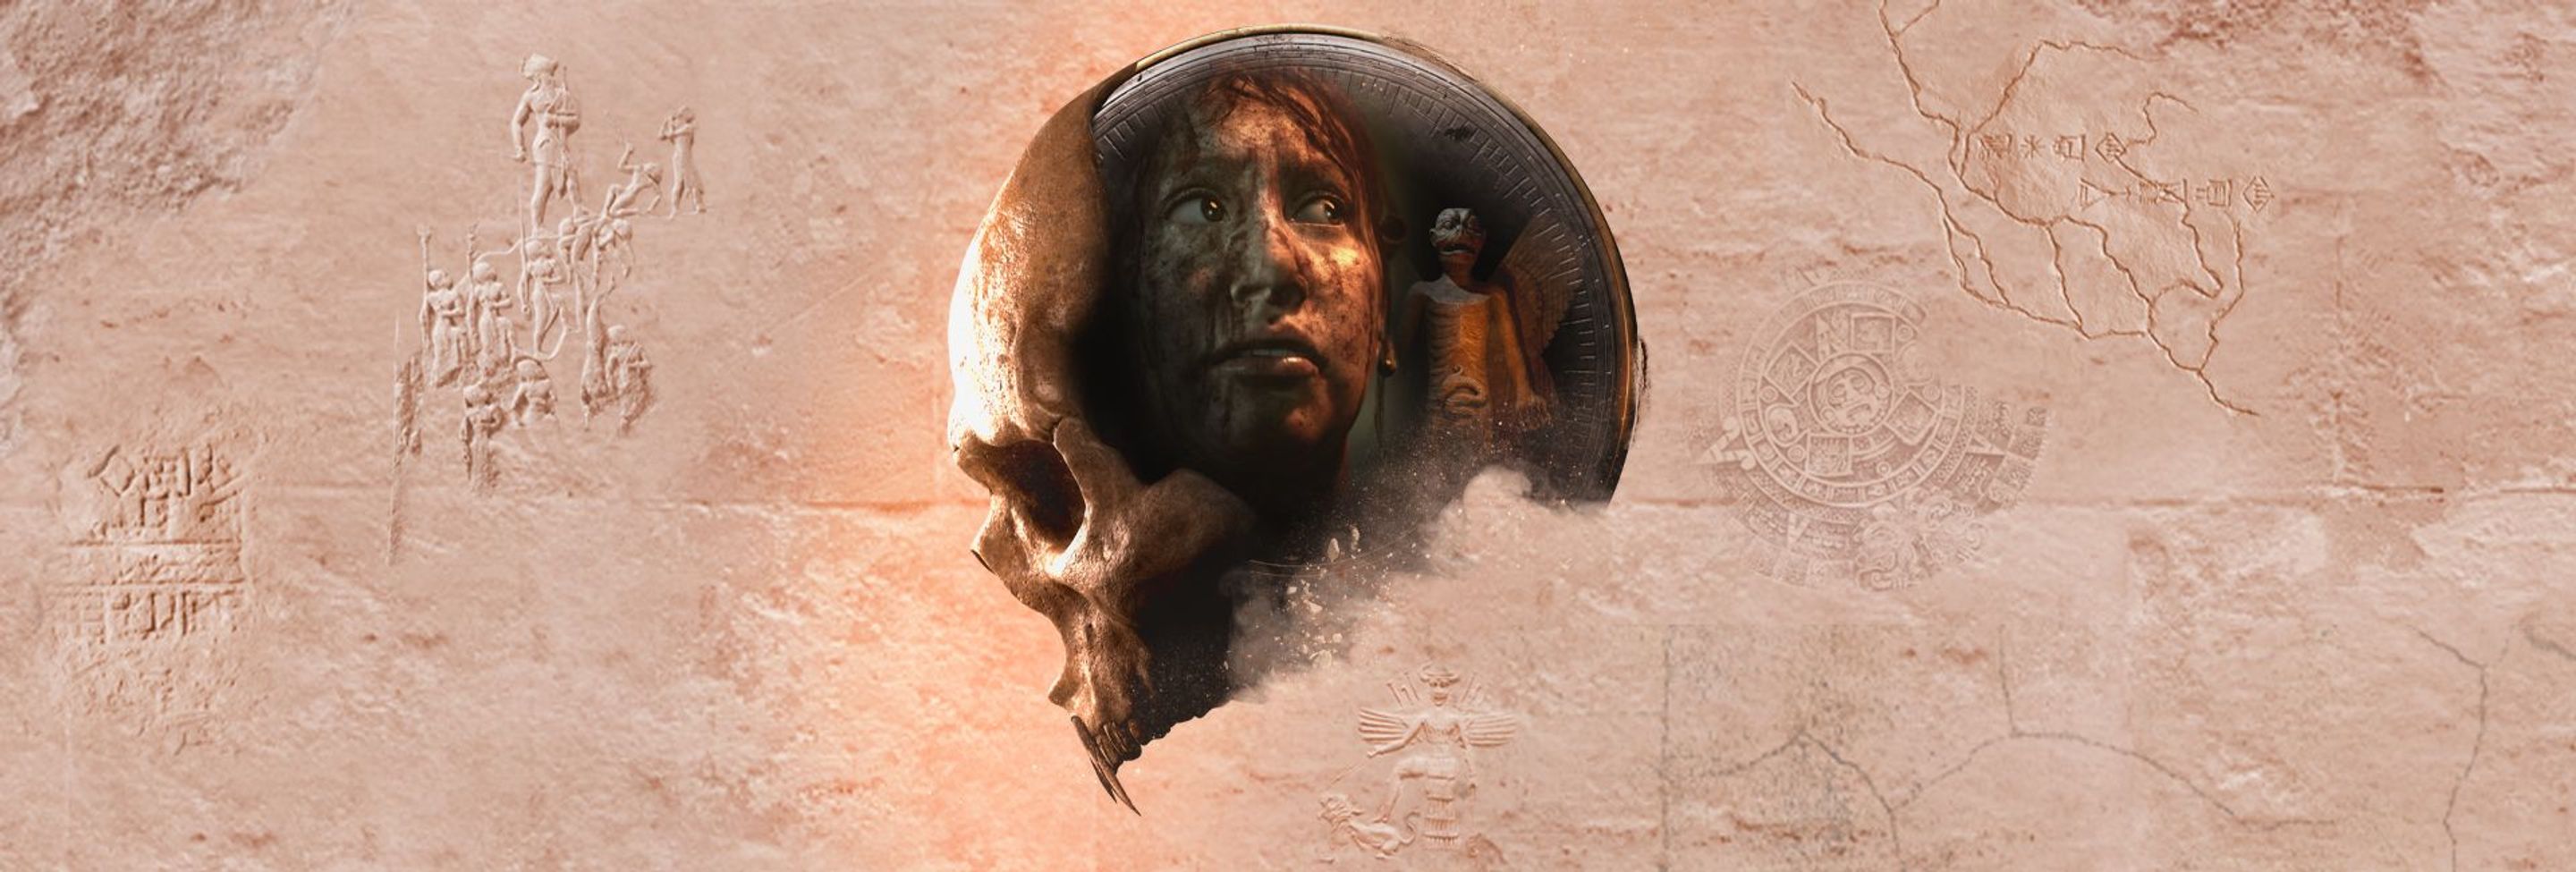 Supermassive Games dévoile un trailer d'House of Ashes avant sa révélation le 27 mai